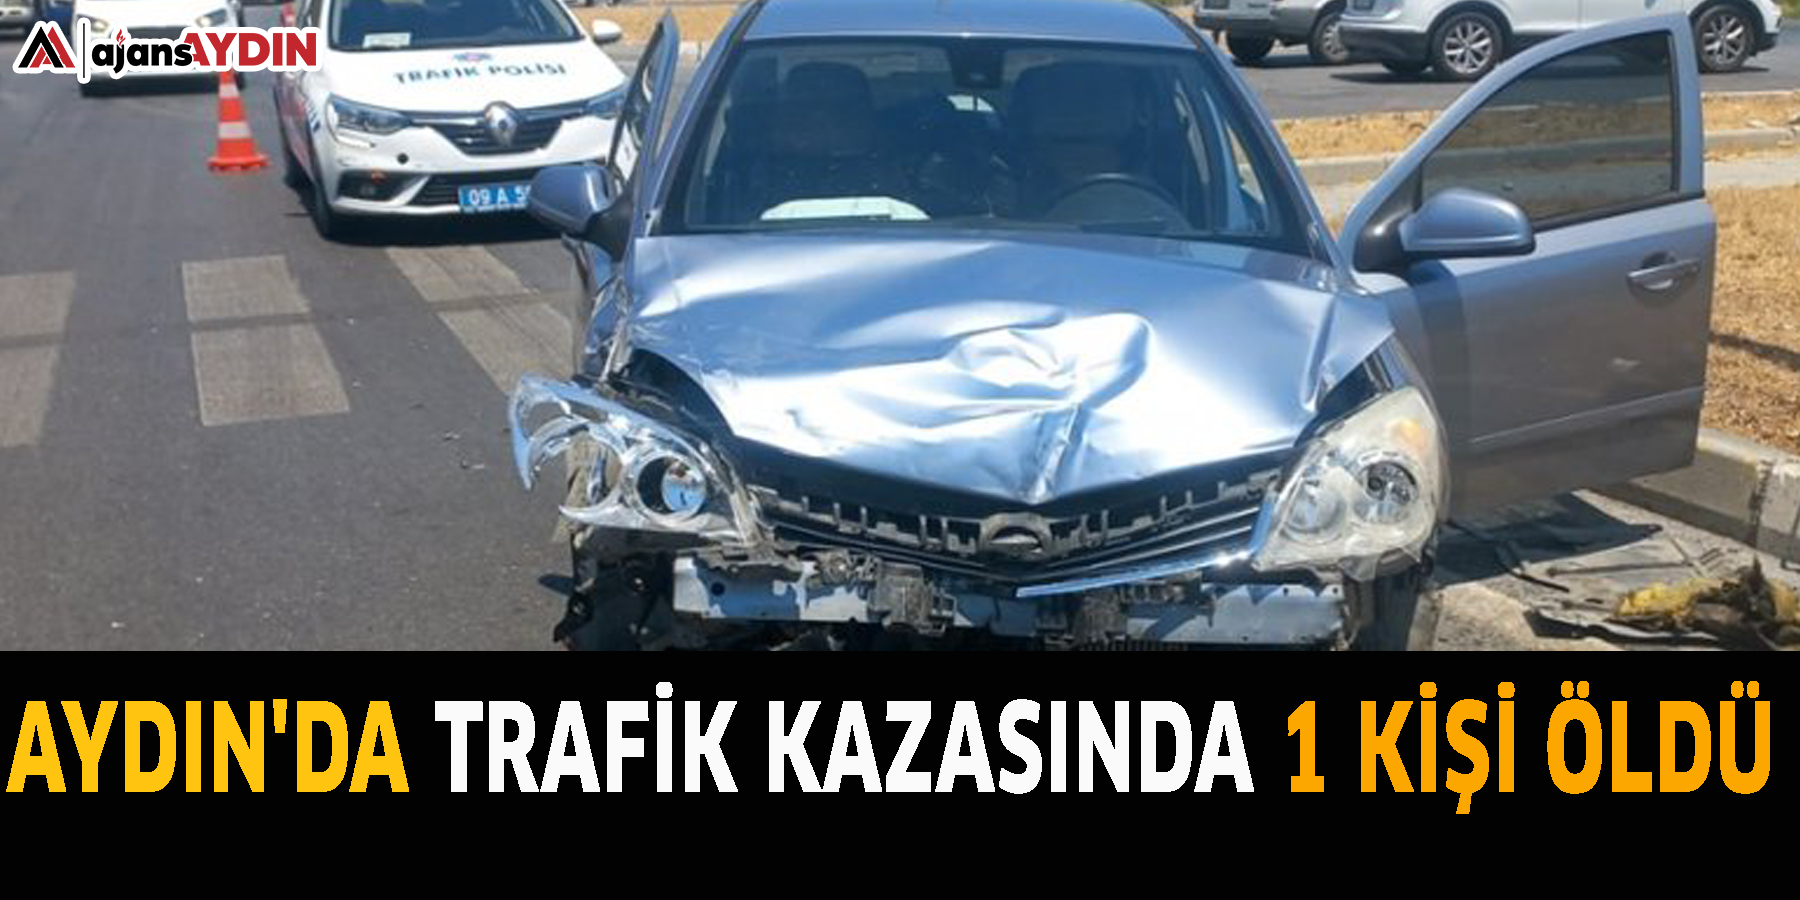 Aydın'da trafik kazasında 1 kişi öldü